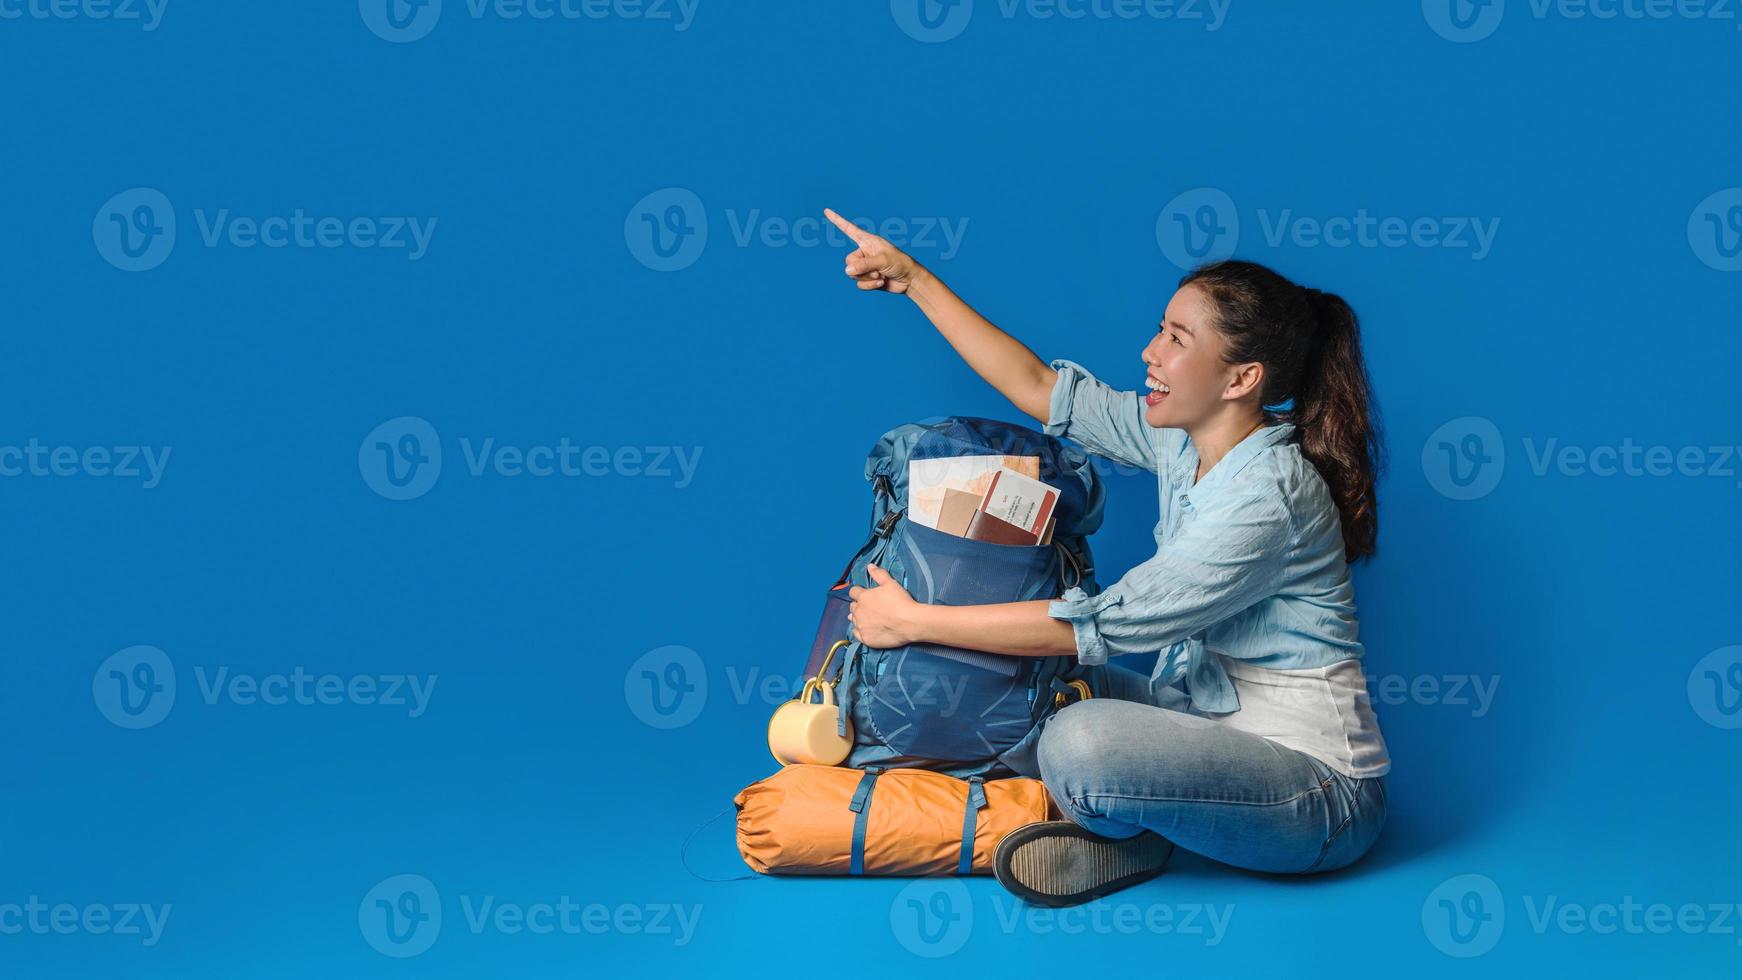 jonge Aziatische reiziger gelukkige vrouw in blauw shirt met rugzak met en uitrusting voor reizigers vakantie met een kaart, op blauwe kleur achtergrond. reis rugzak foto